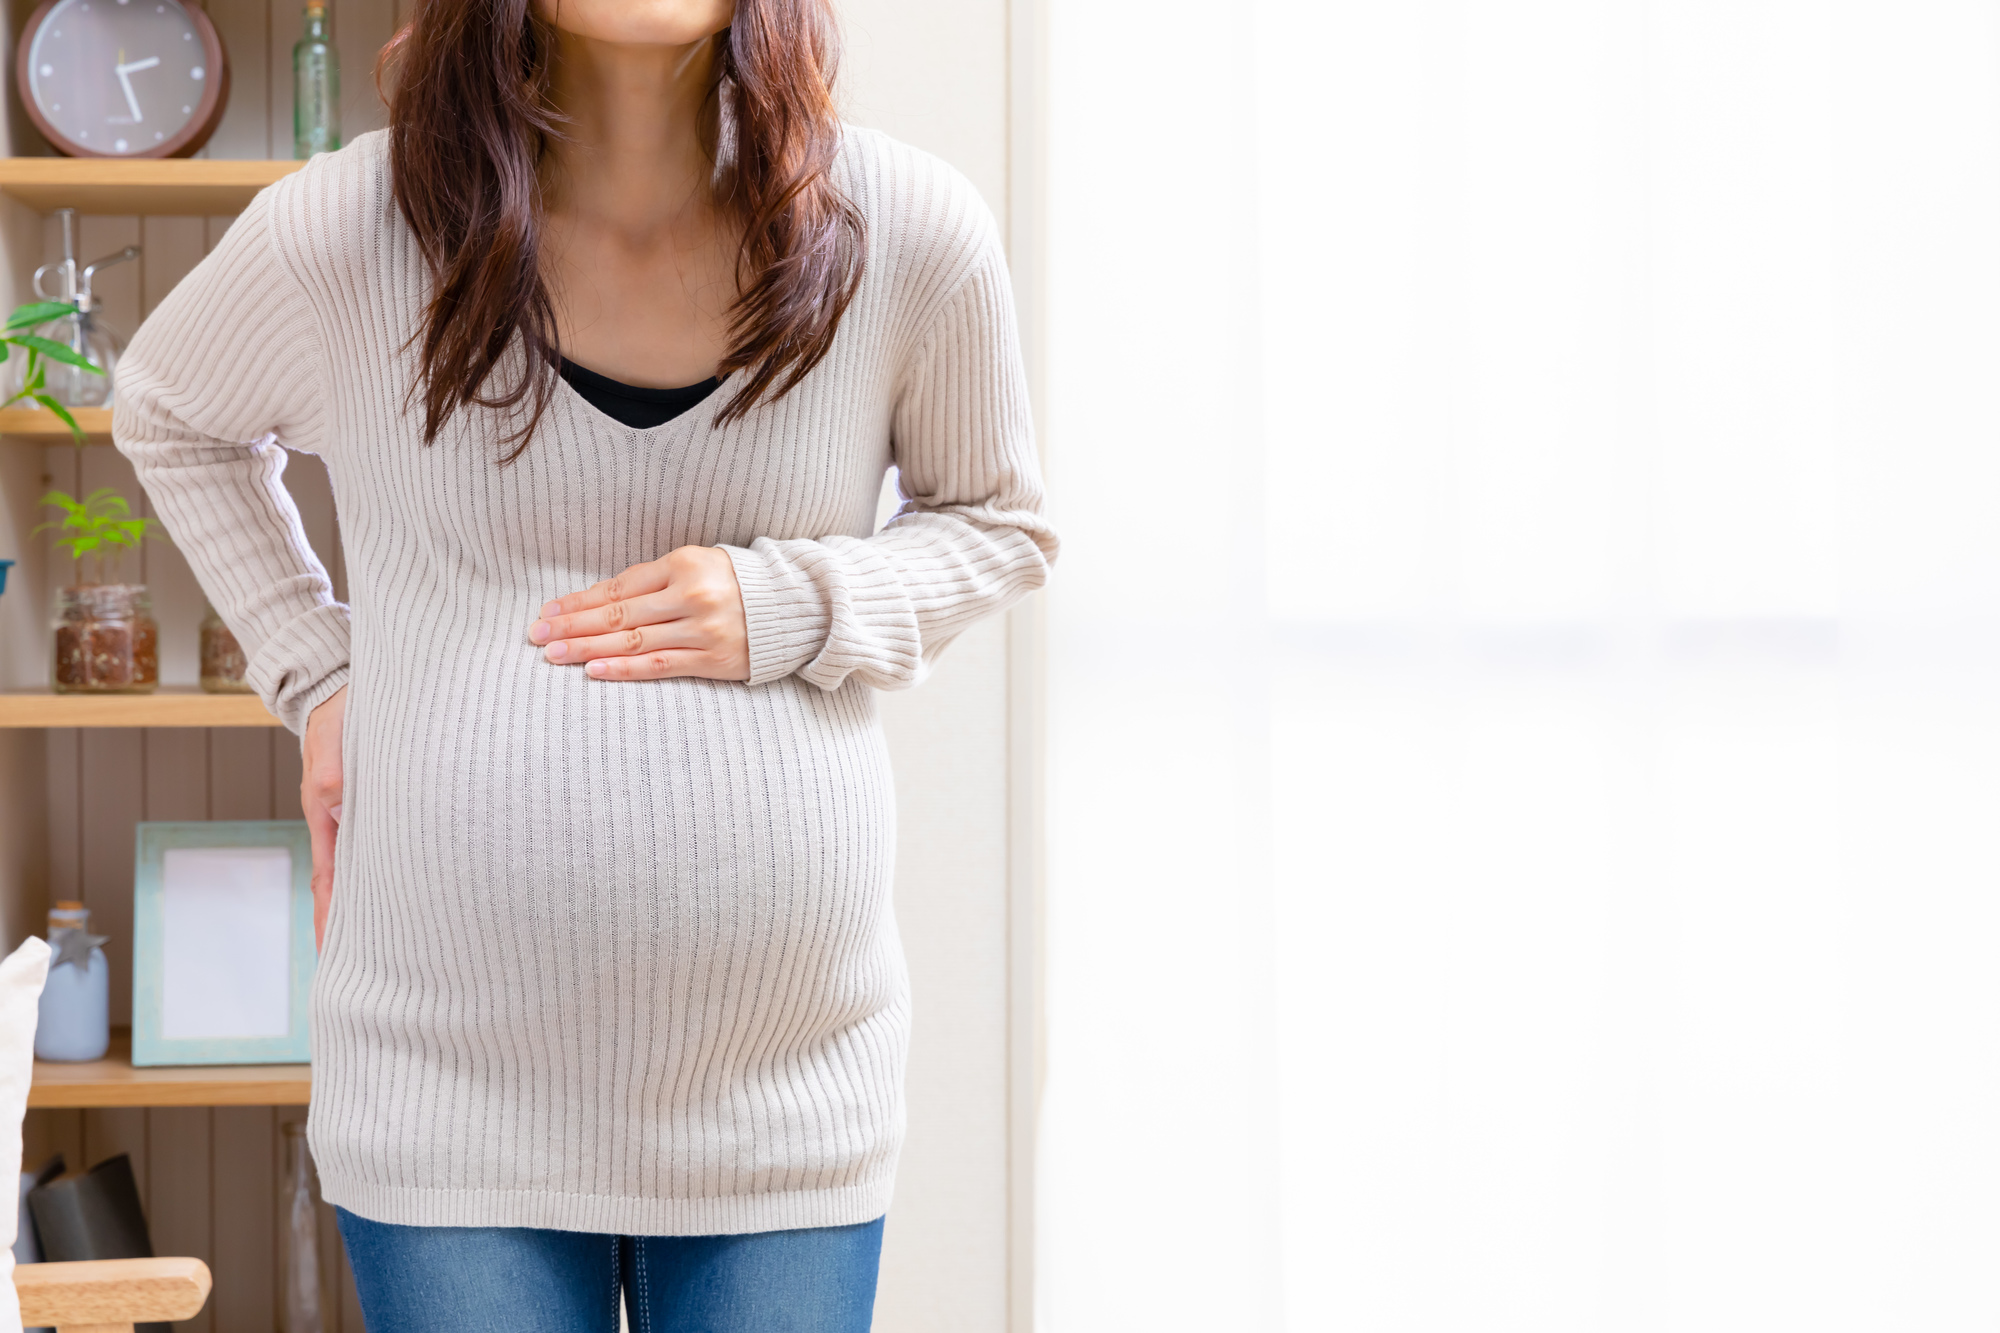 医師監修 妊娠後期の腹痛 キリキリ チクチク痛 下痢や吐き気も 健康検定協会